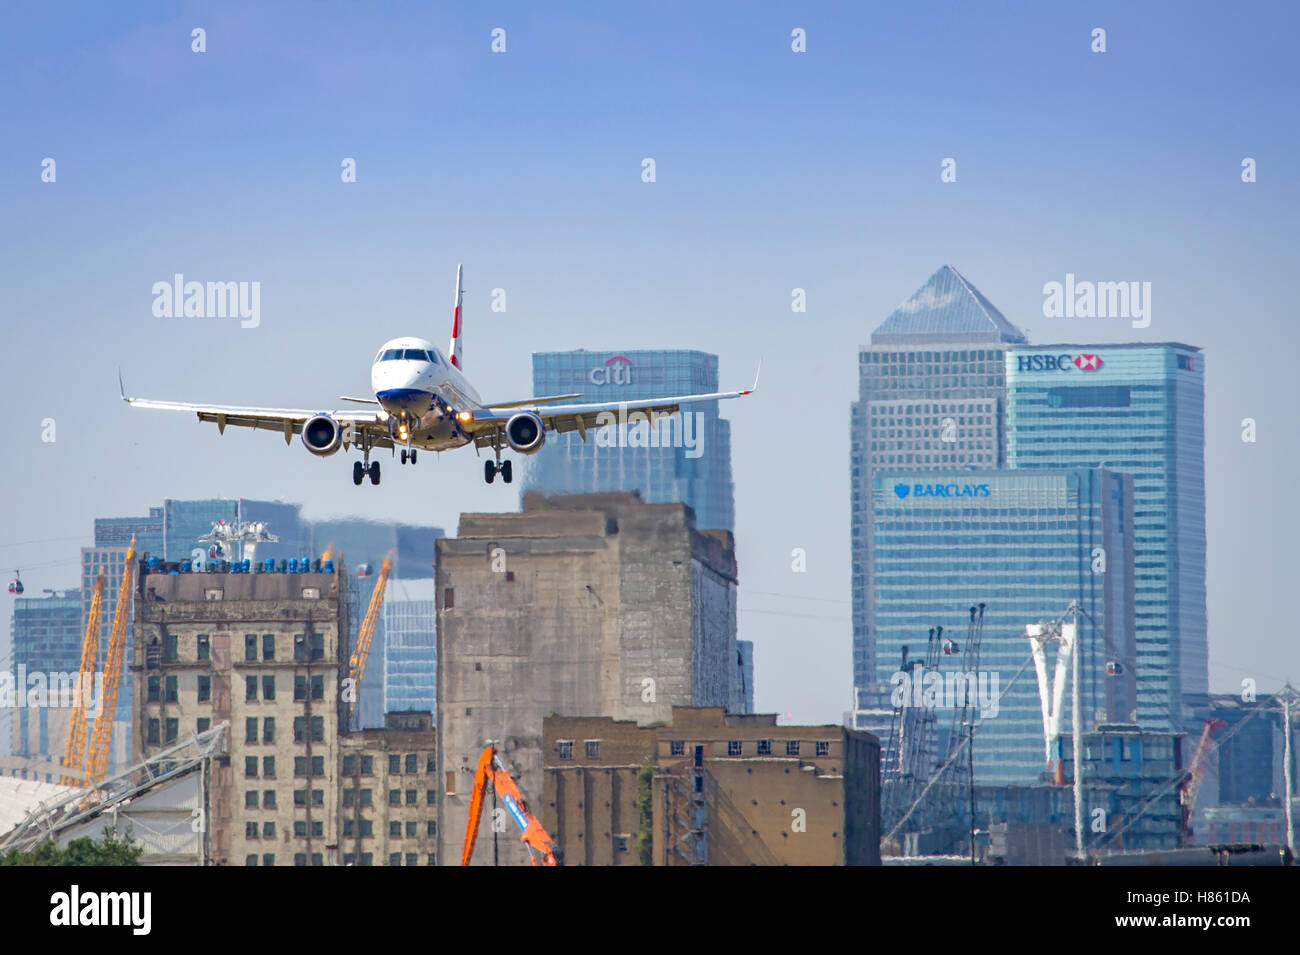 British Airways city flyer avion qui décollait de l'aéroport de London City Banque D'Images